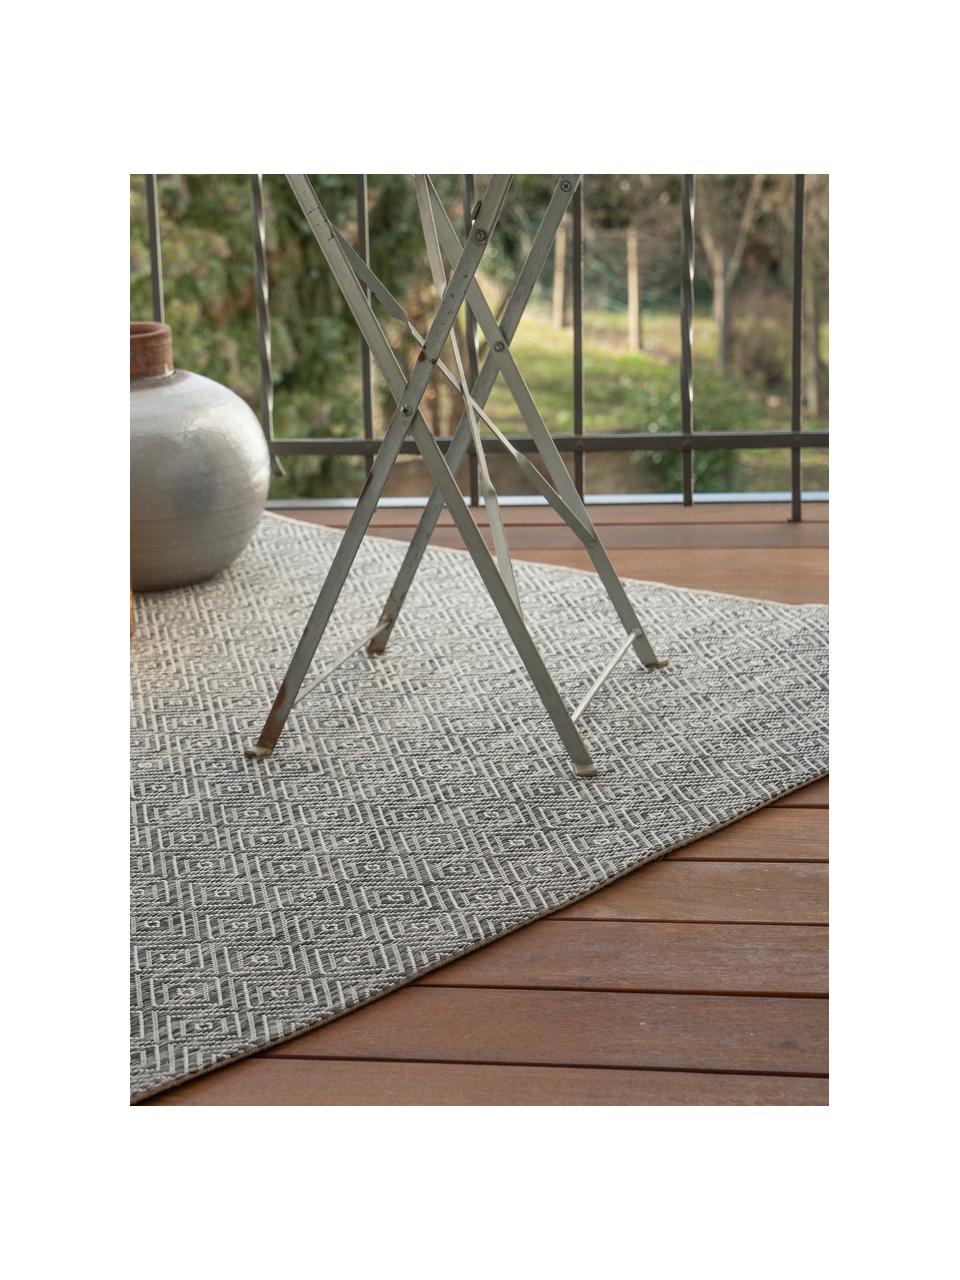 Interiérový a exterirérový koberec s grafickým vzorem Muster, 100 % polypropylen, Odstíny šedé, Š 160 cm, D 230 cm (velikost M)